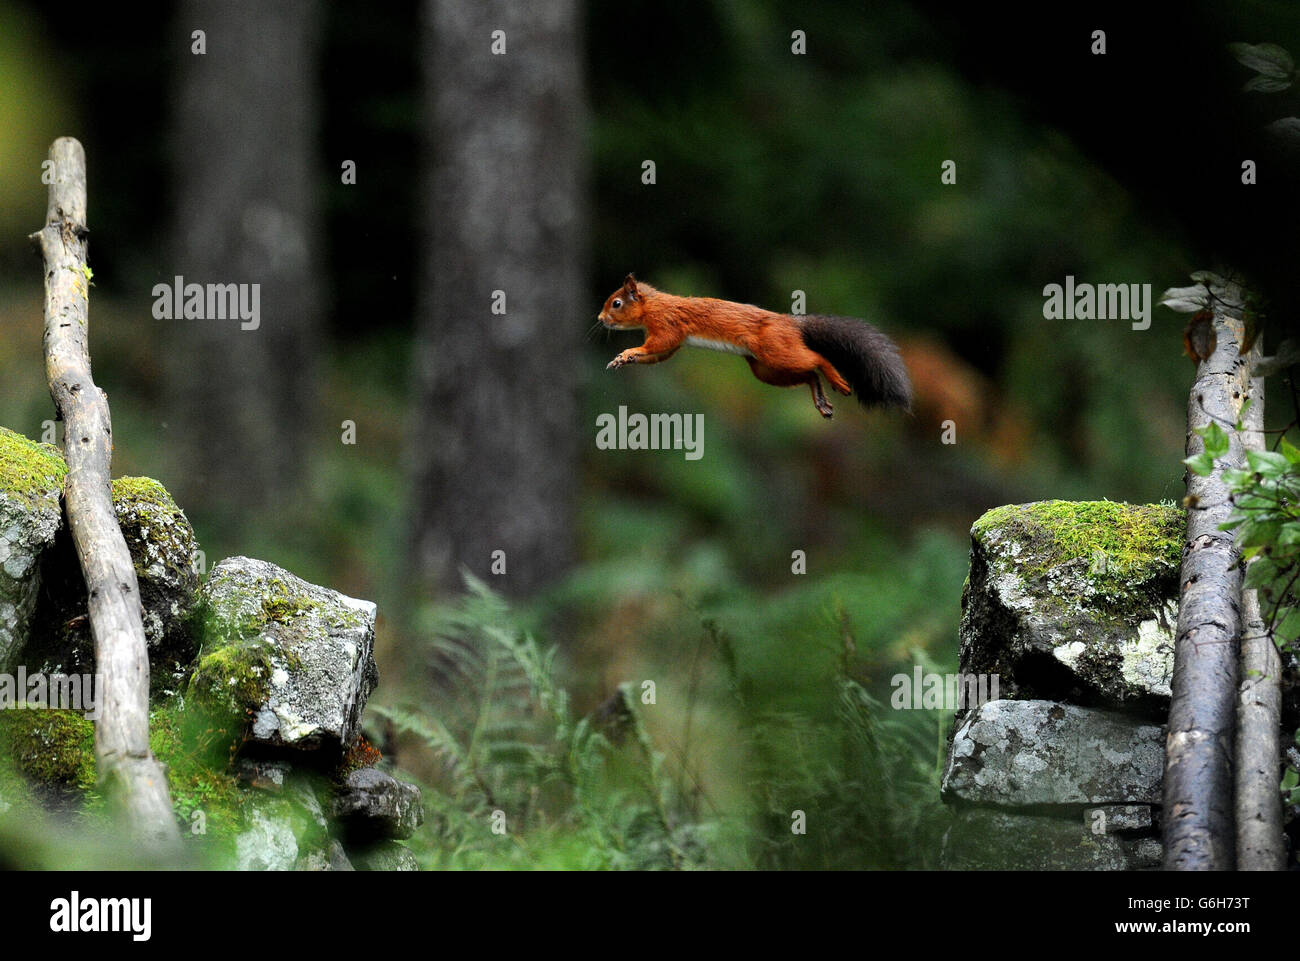 Ein Red Squirrel pflaft entlang einer Steinmauer im Kielder Forest, Northumberland, nachdem er Lebensmittel gesammelt hat. Der Kielder Forest ist mit 250 Quadratmeilen der größte Wald Englands und beherbergt die größte verbliebene Population der Roten Eichhörnchen in England. Stockfoto